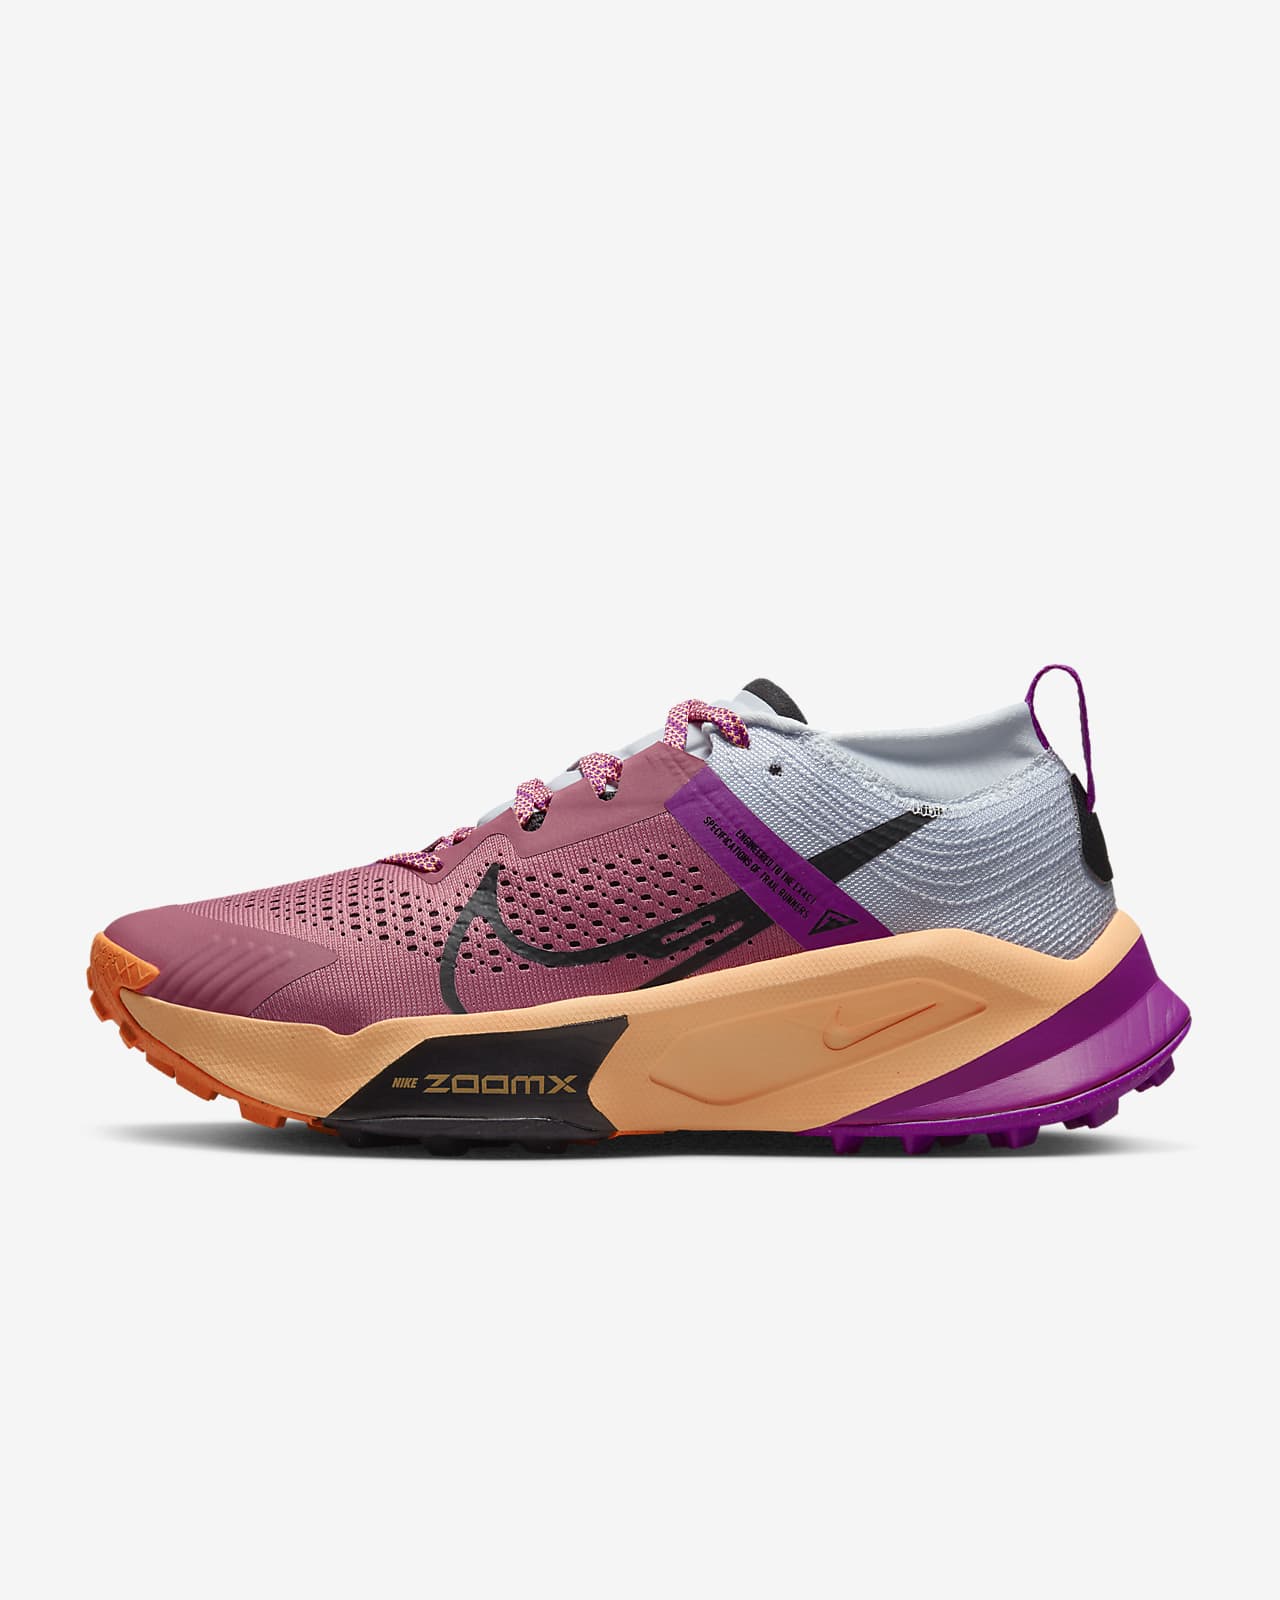 Nike ZoomX Zegama Women's Trail-Running Shoes